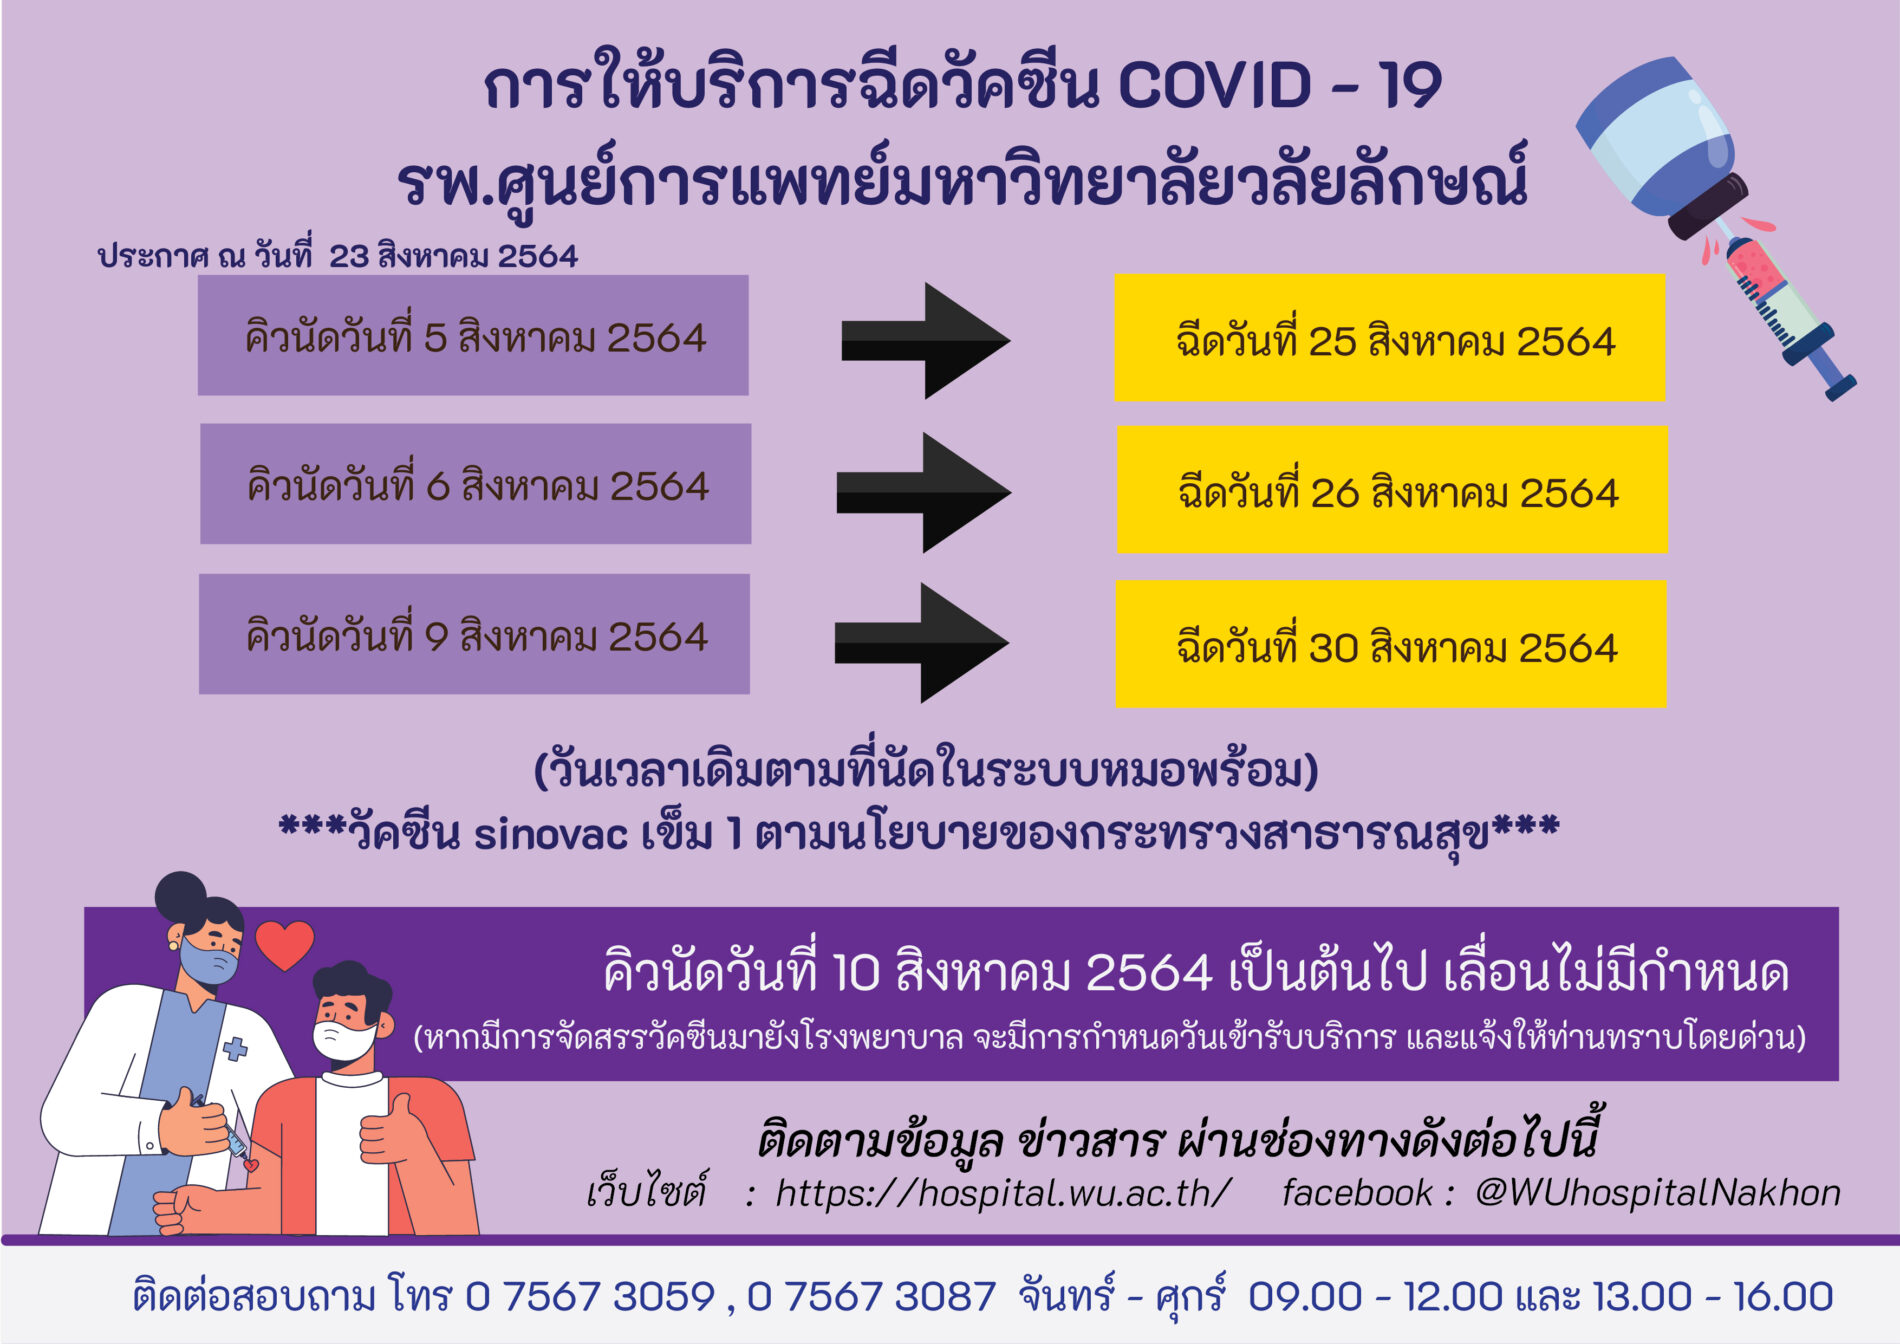 การให้บริการฉีดวัคซีน COVID - 19